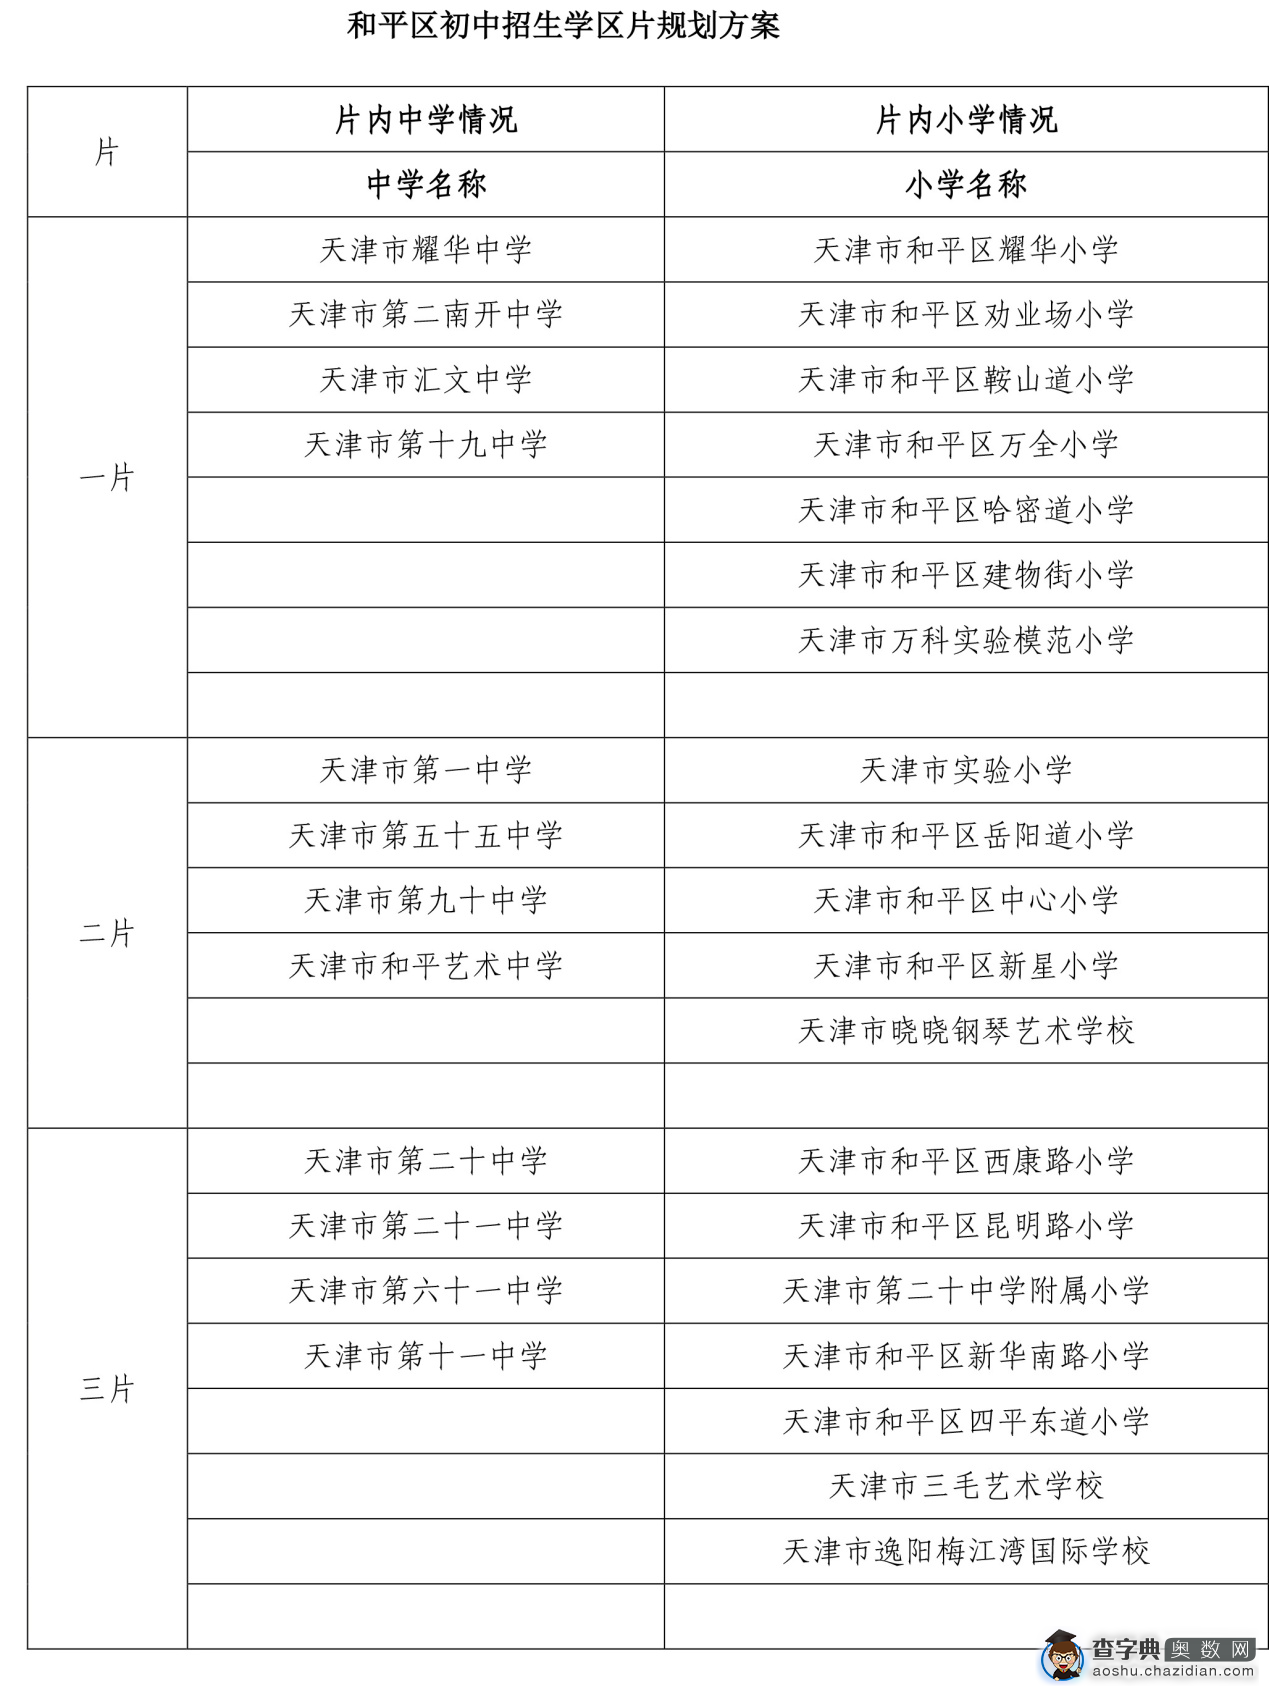 2016天津和平区小升初流程汇总1